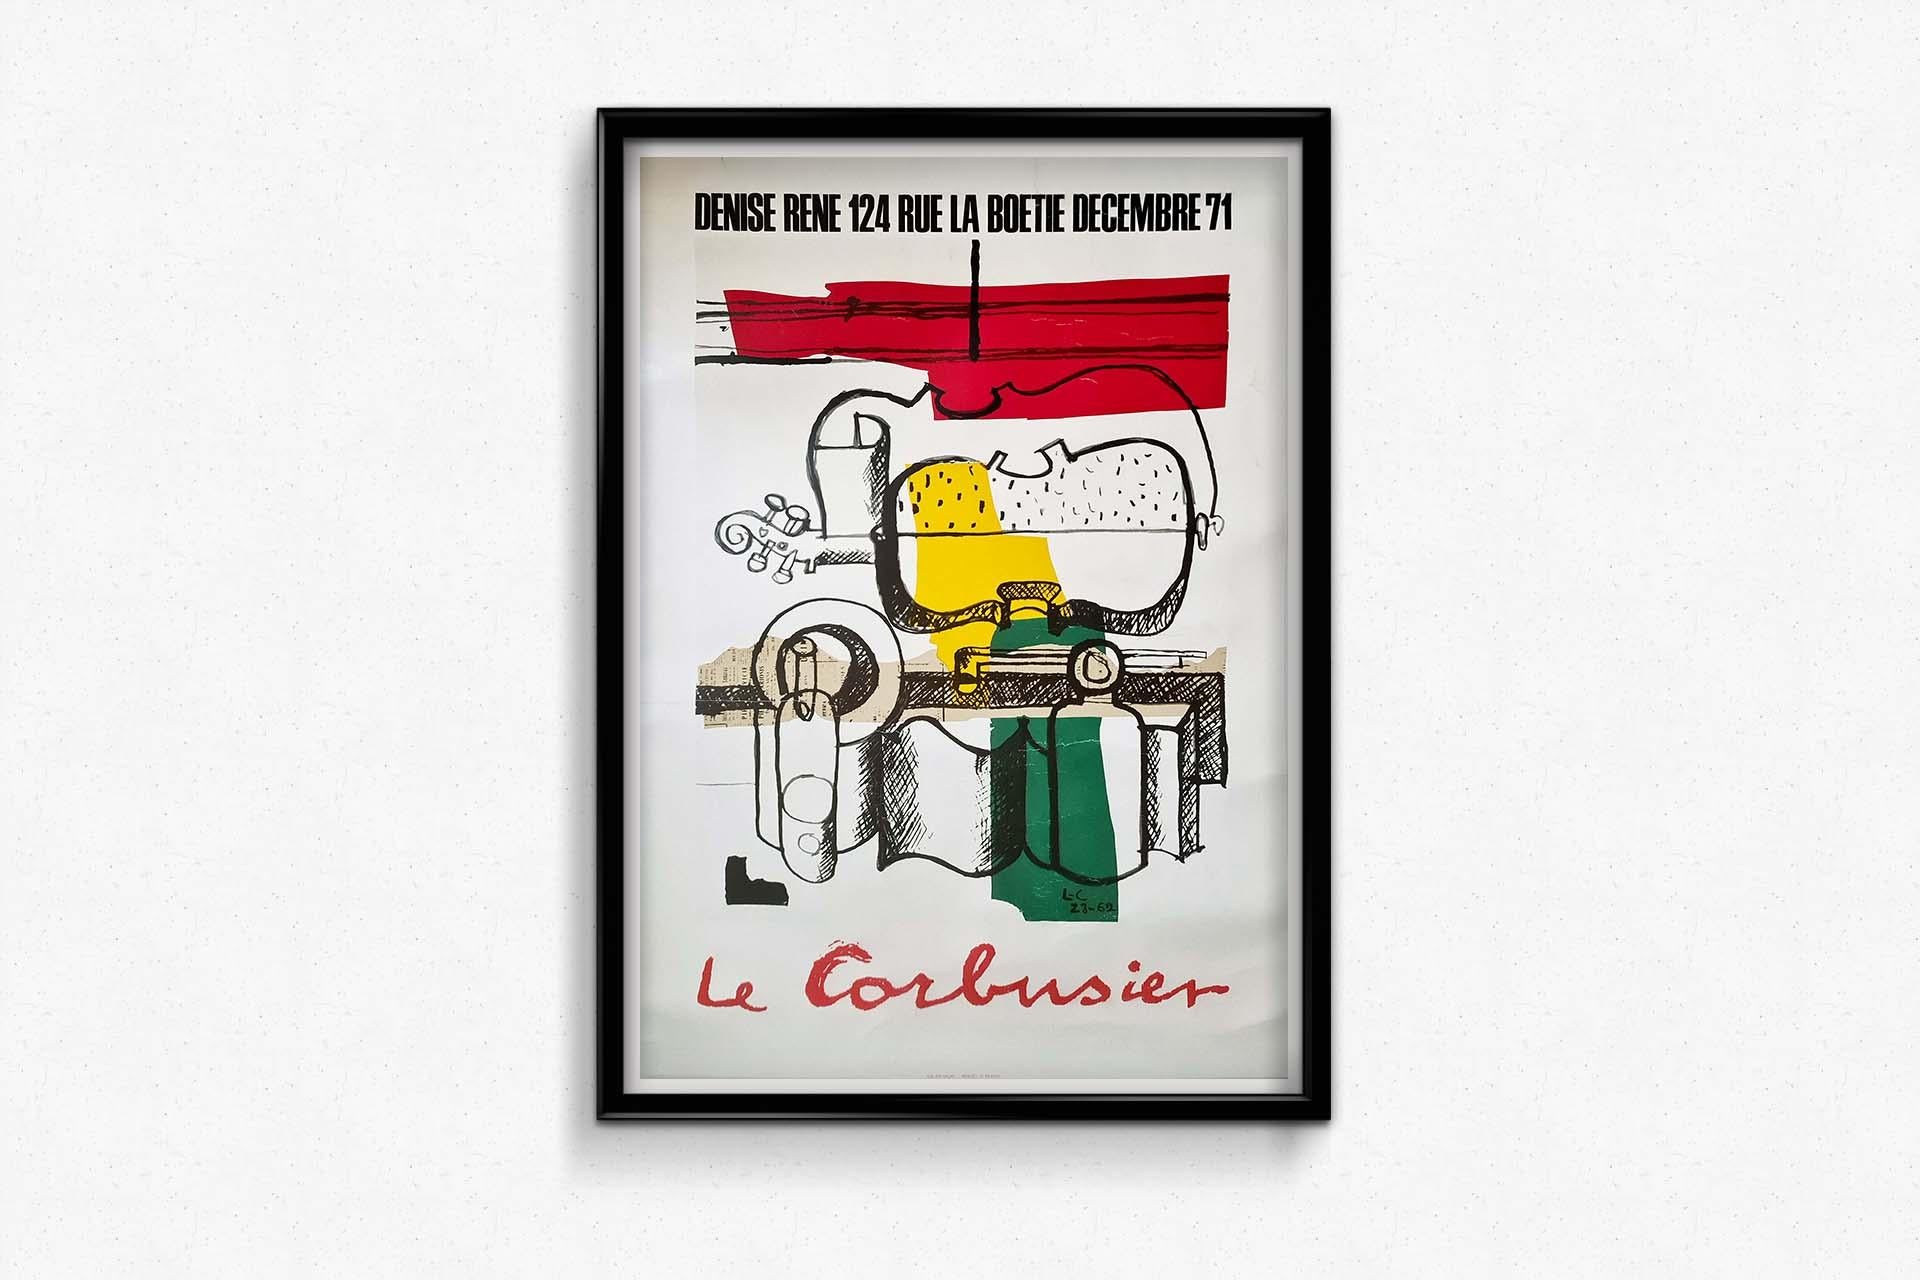 Le Corbusier's original 1971 exhibition poster at Galerie Denise René For Sale 3